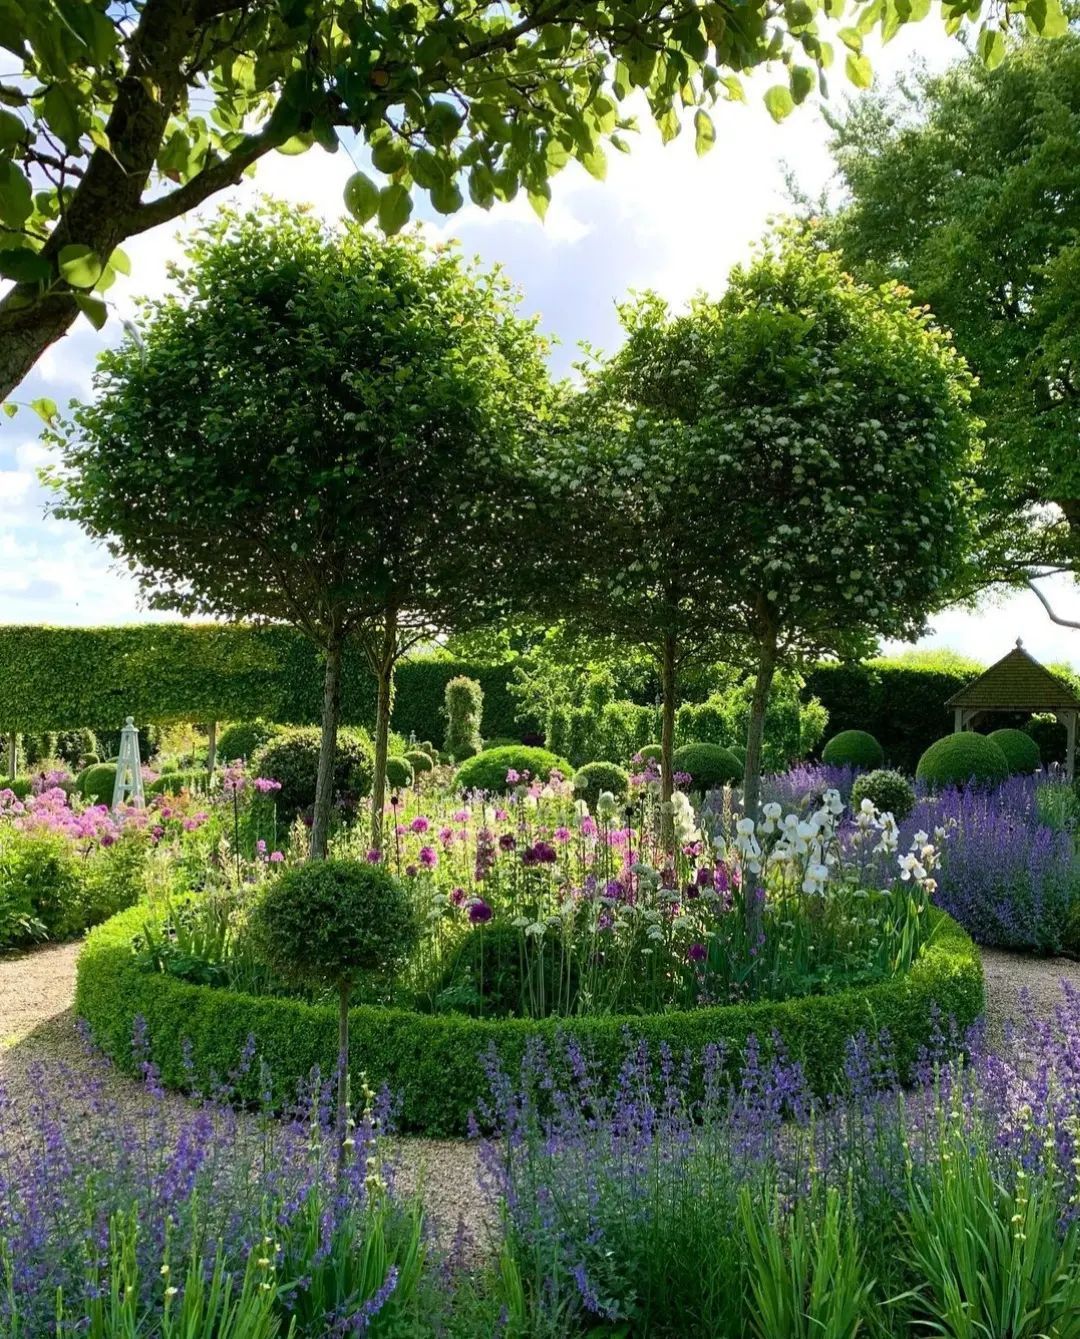 The Art of Creating Elegant Formal Gardens